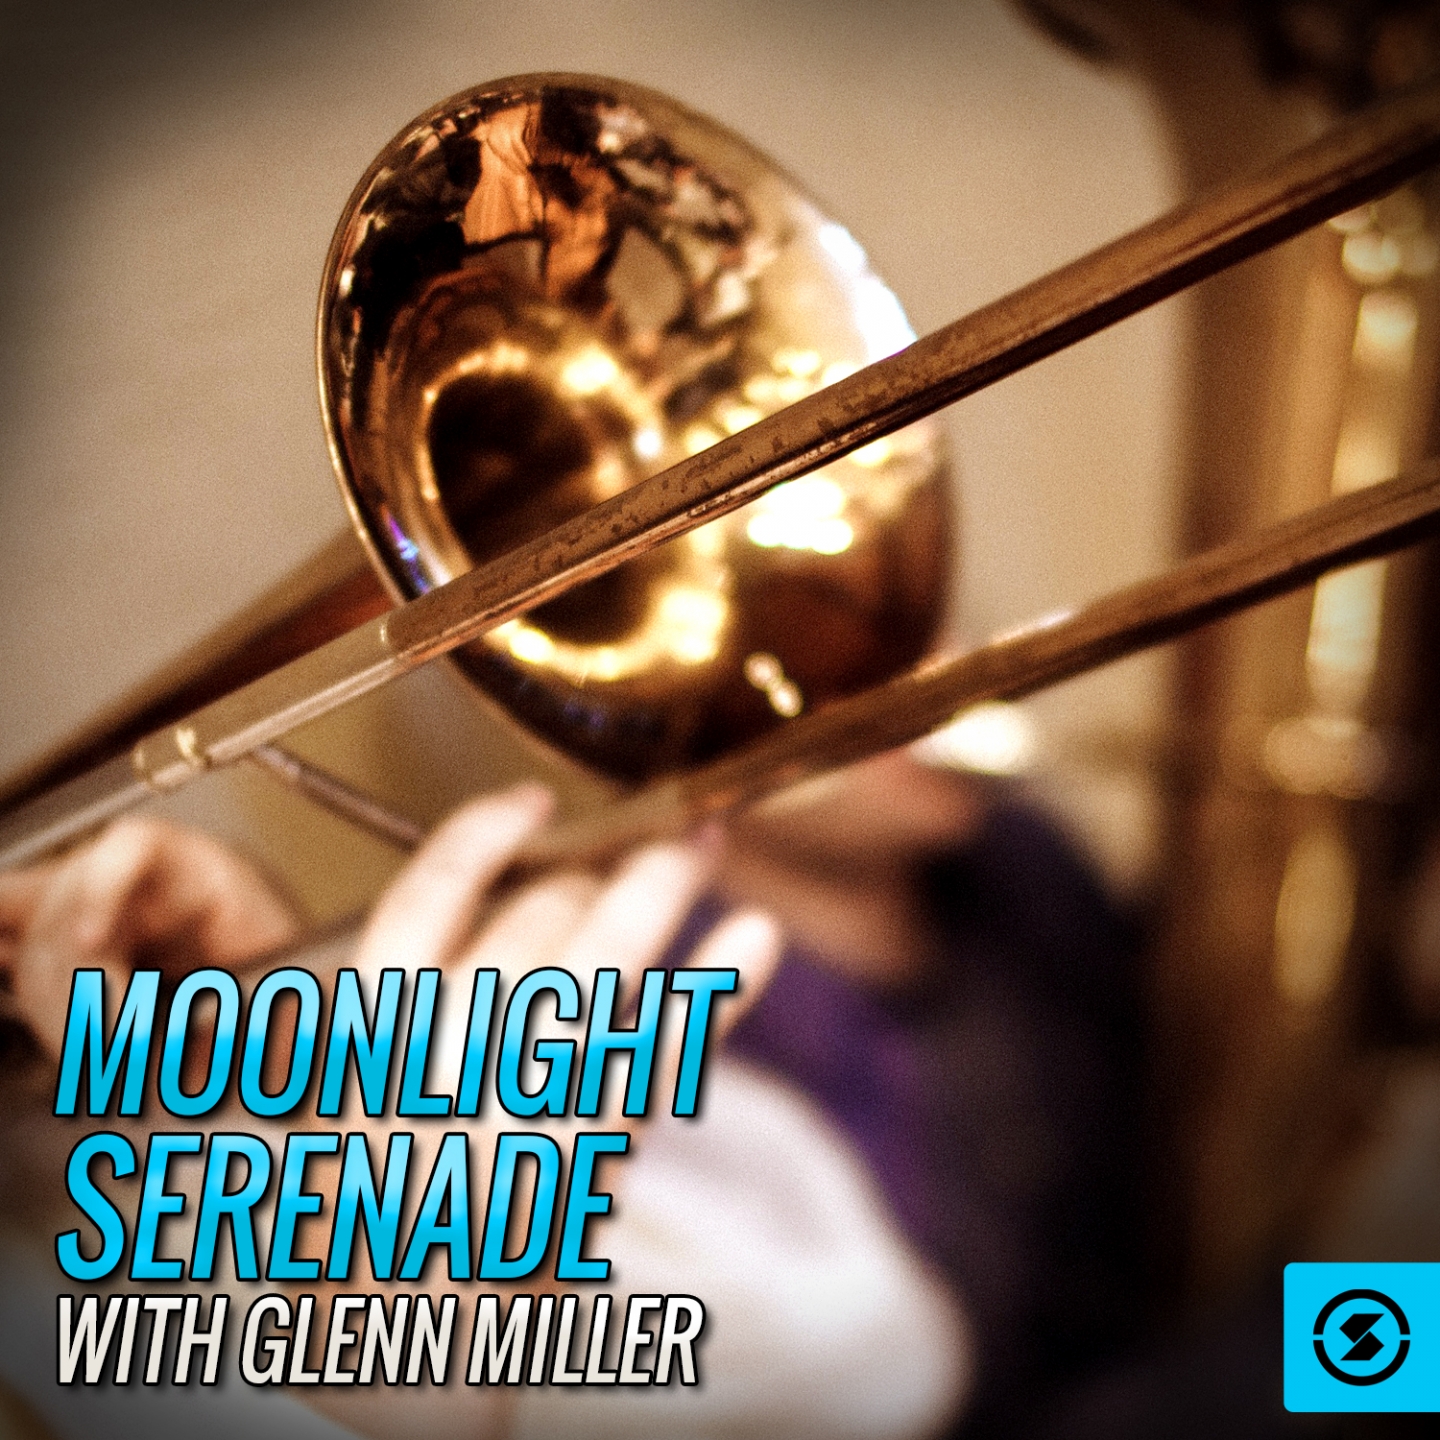 Moonlight Serenade with Glenn Miller